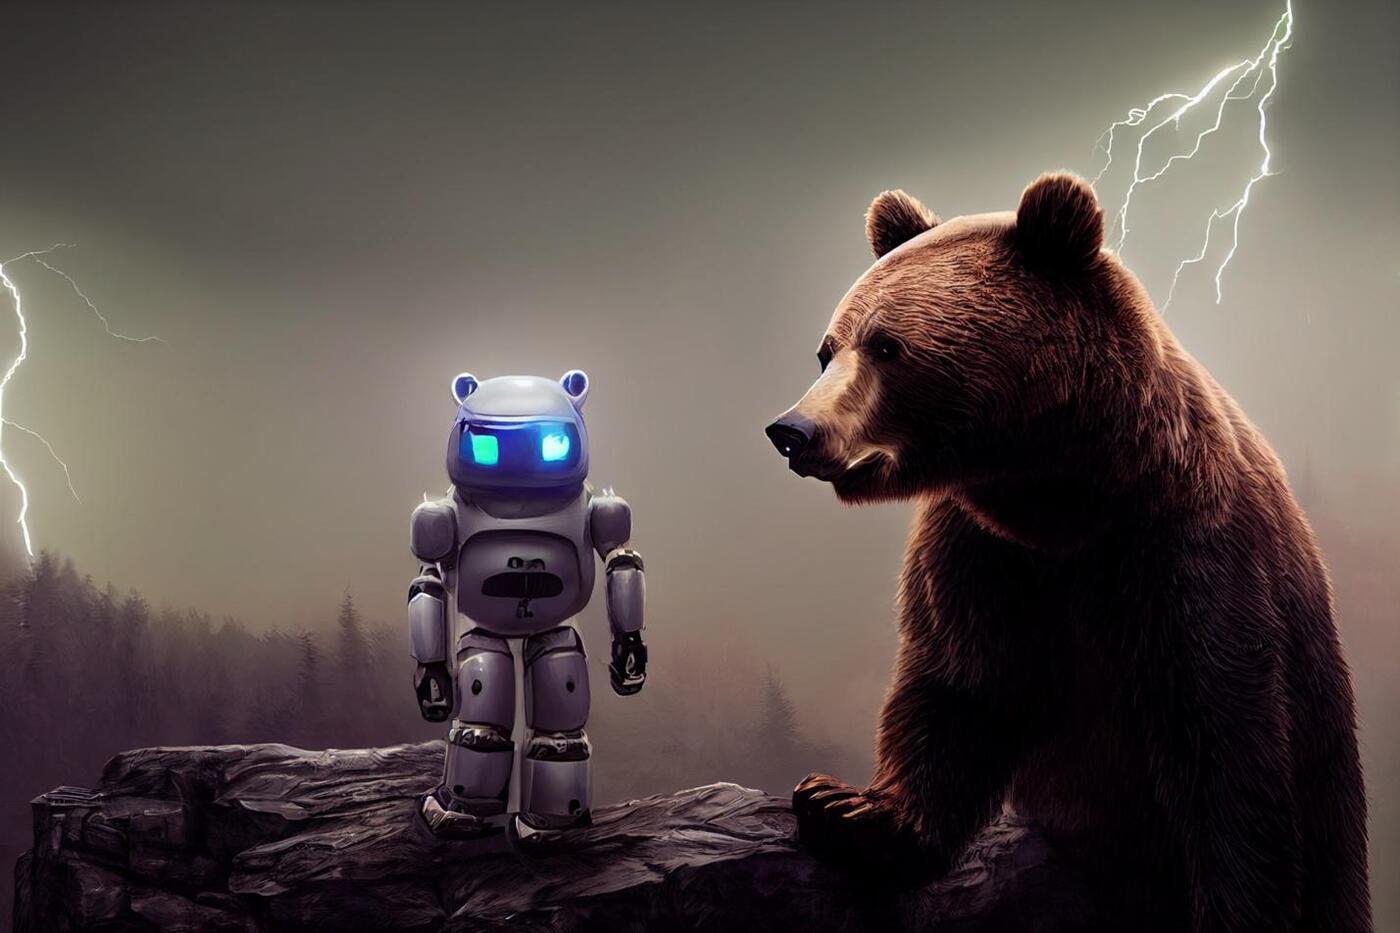 A Bear and a Robot have an intriguing conversation